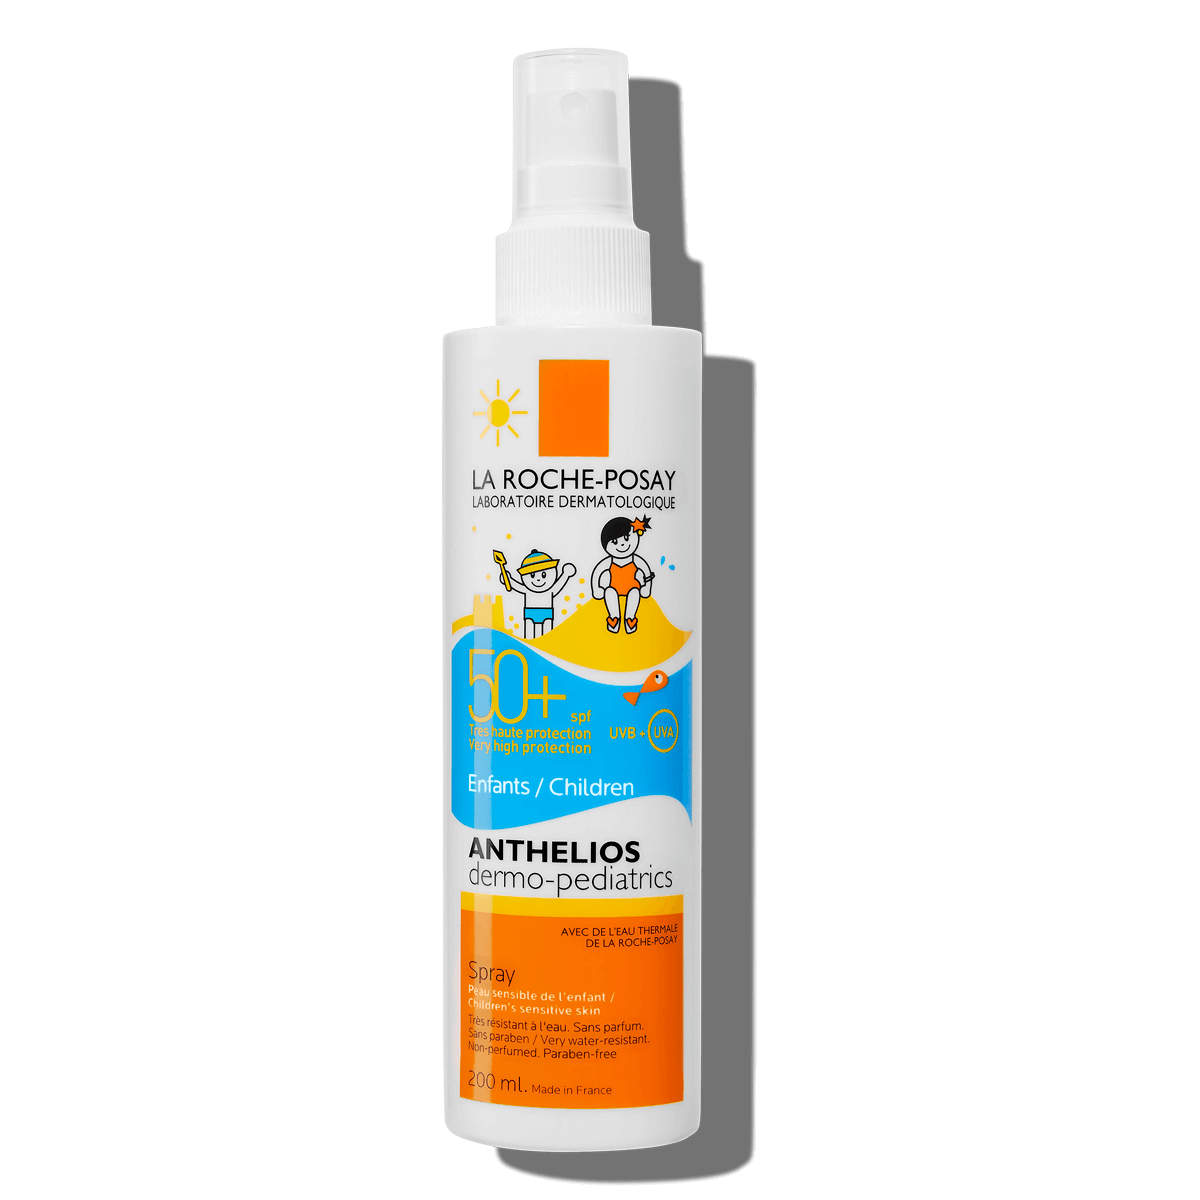 La Roche Posay ProductPage Sun Anthelios Dermo Pediatrics Spray Spf50 